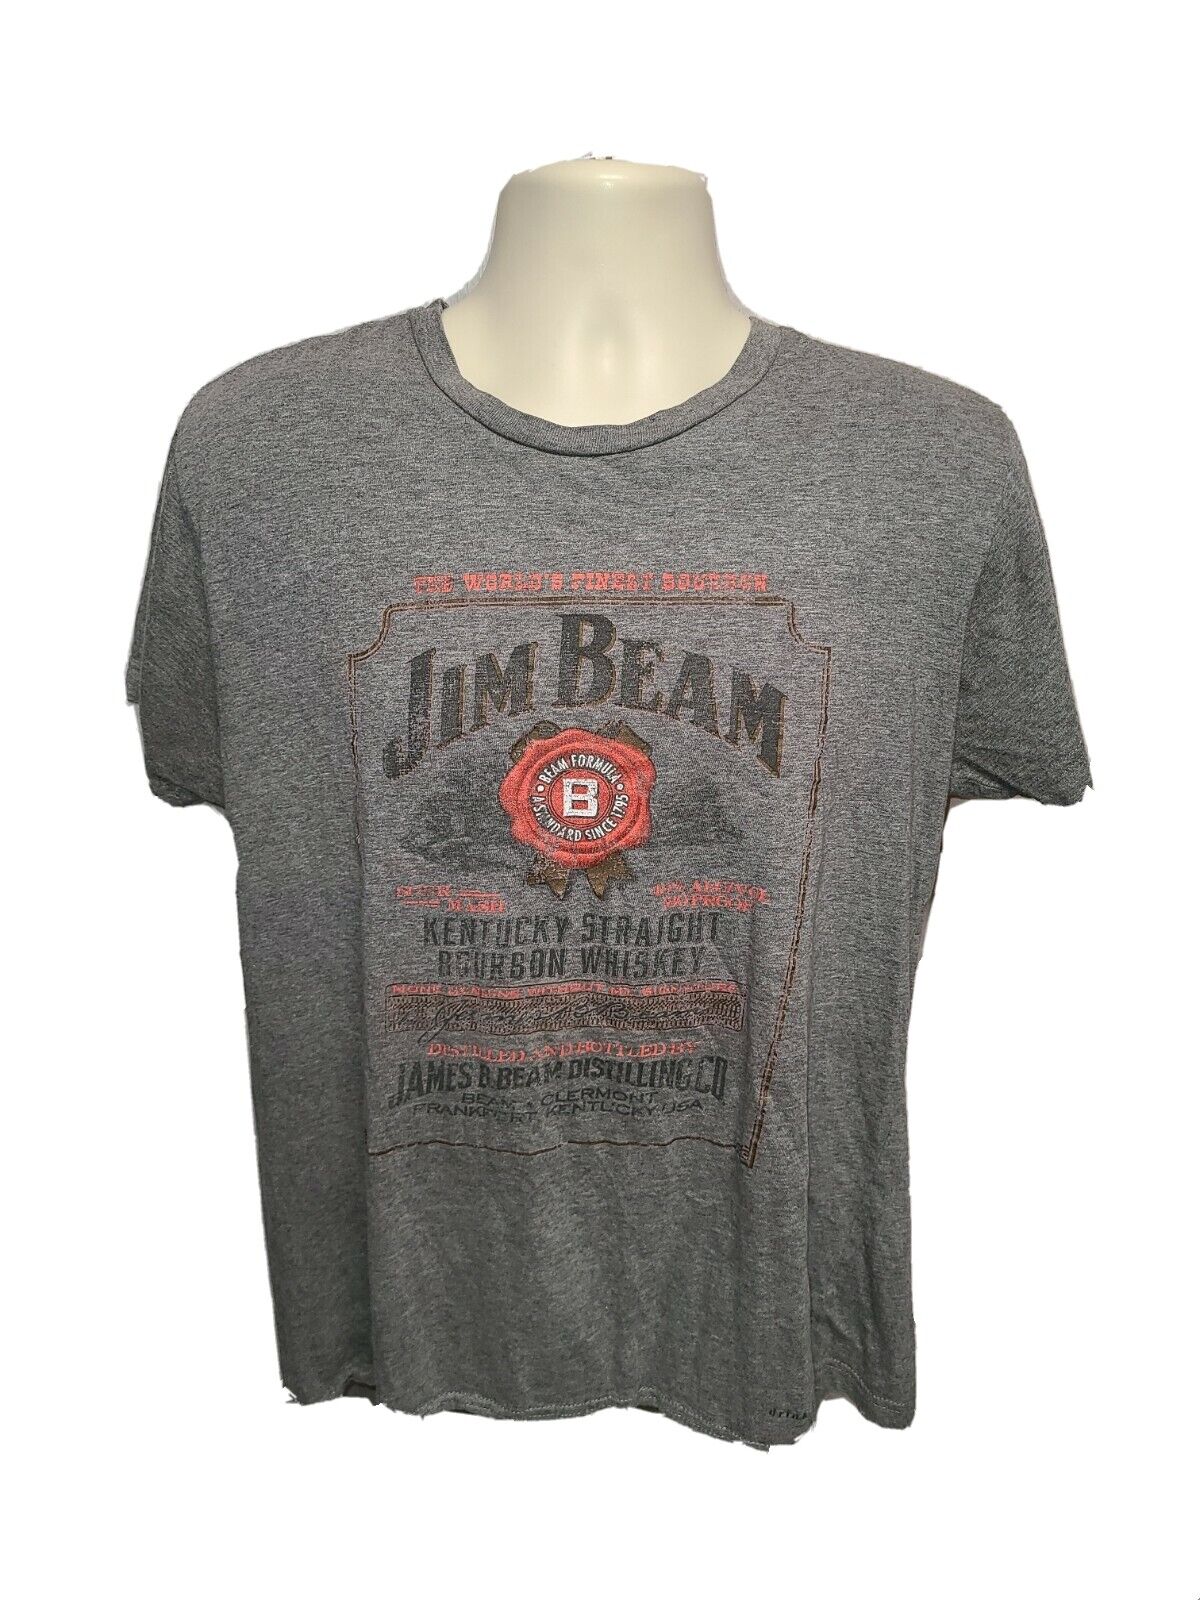 Jim Beam Kentucky Straight Bourbon Whiskey Womens Large Gray TShirt